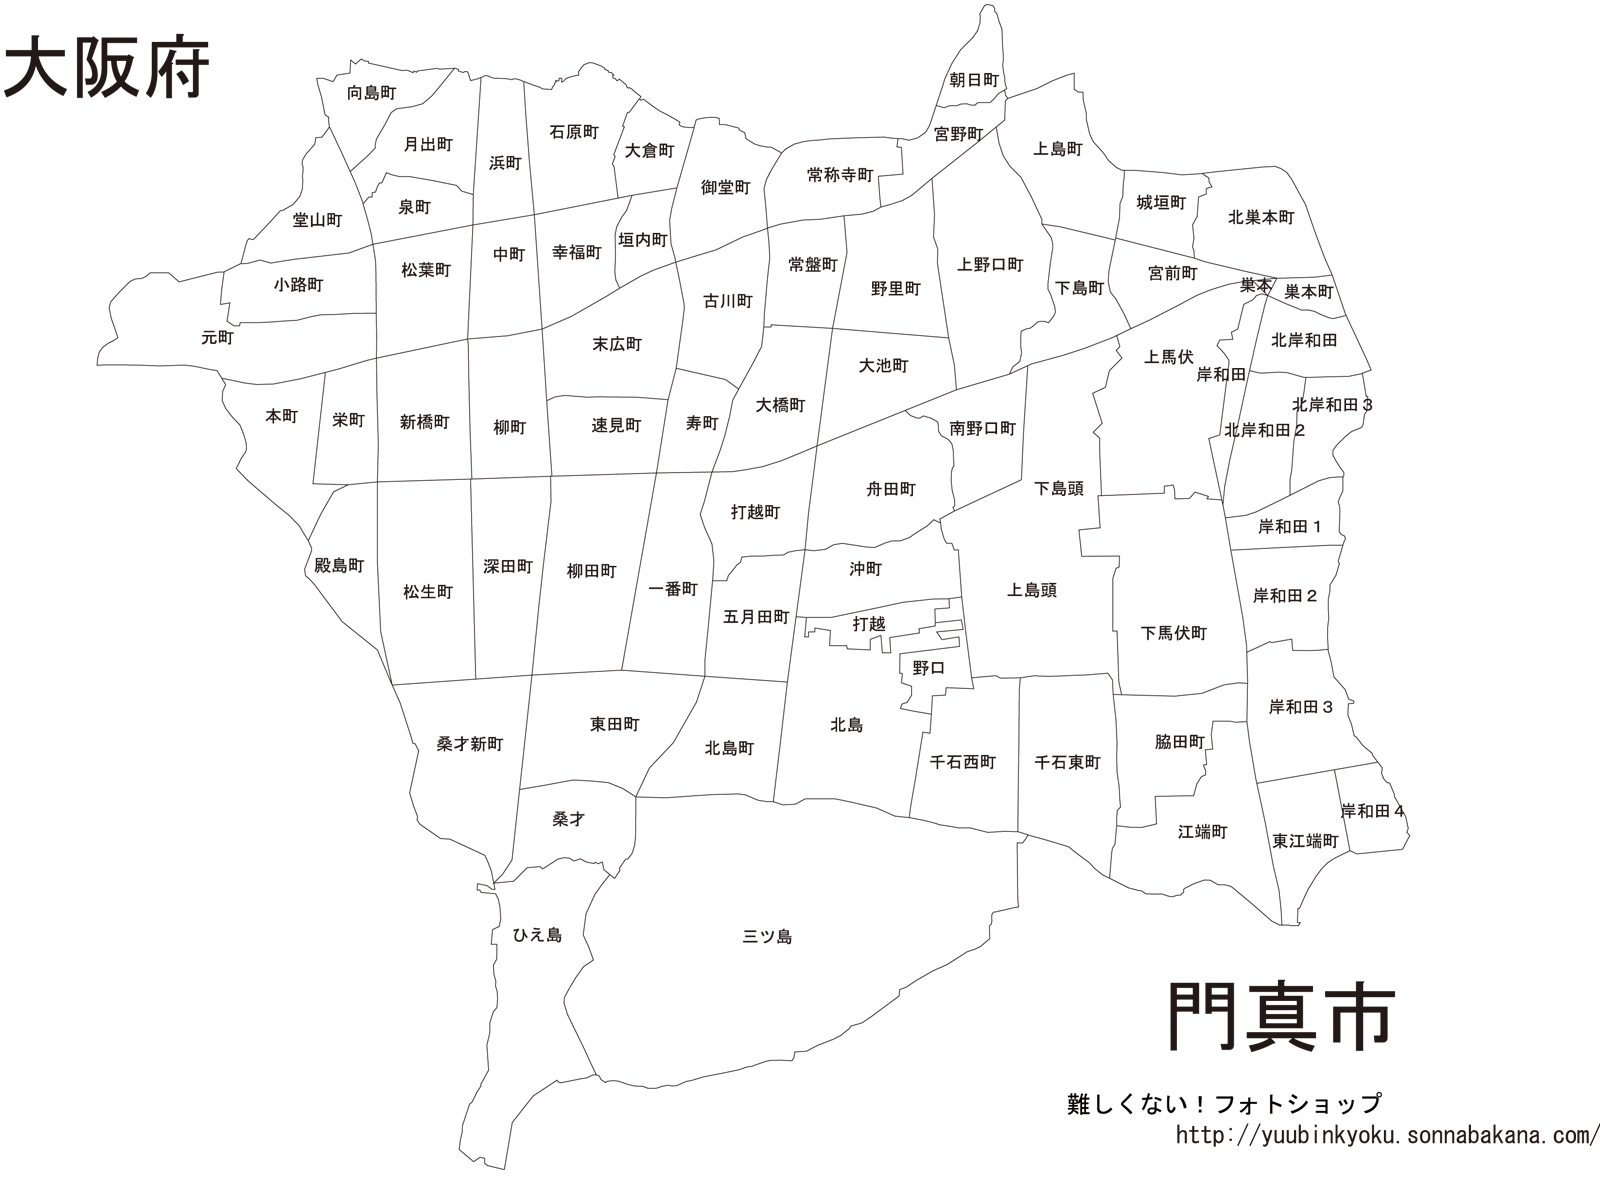 大阪府門真市の白地図 町名入りの詳細な白地図 マップフリー08 難しくない フォトショップ